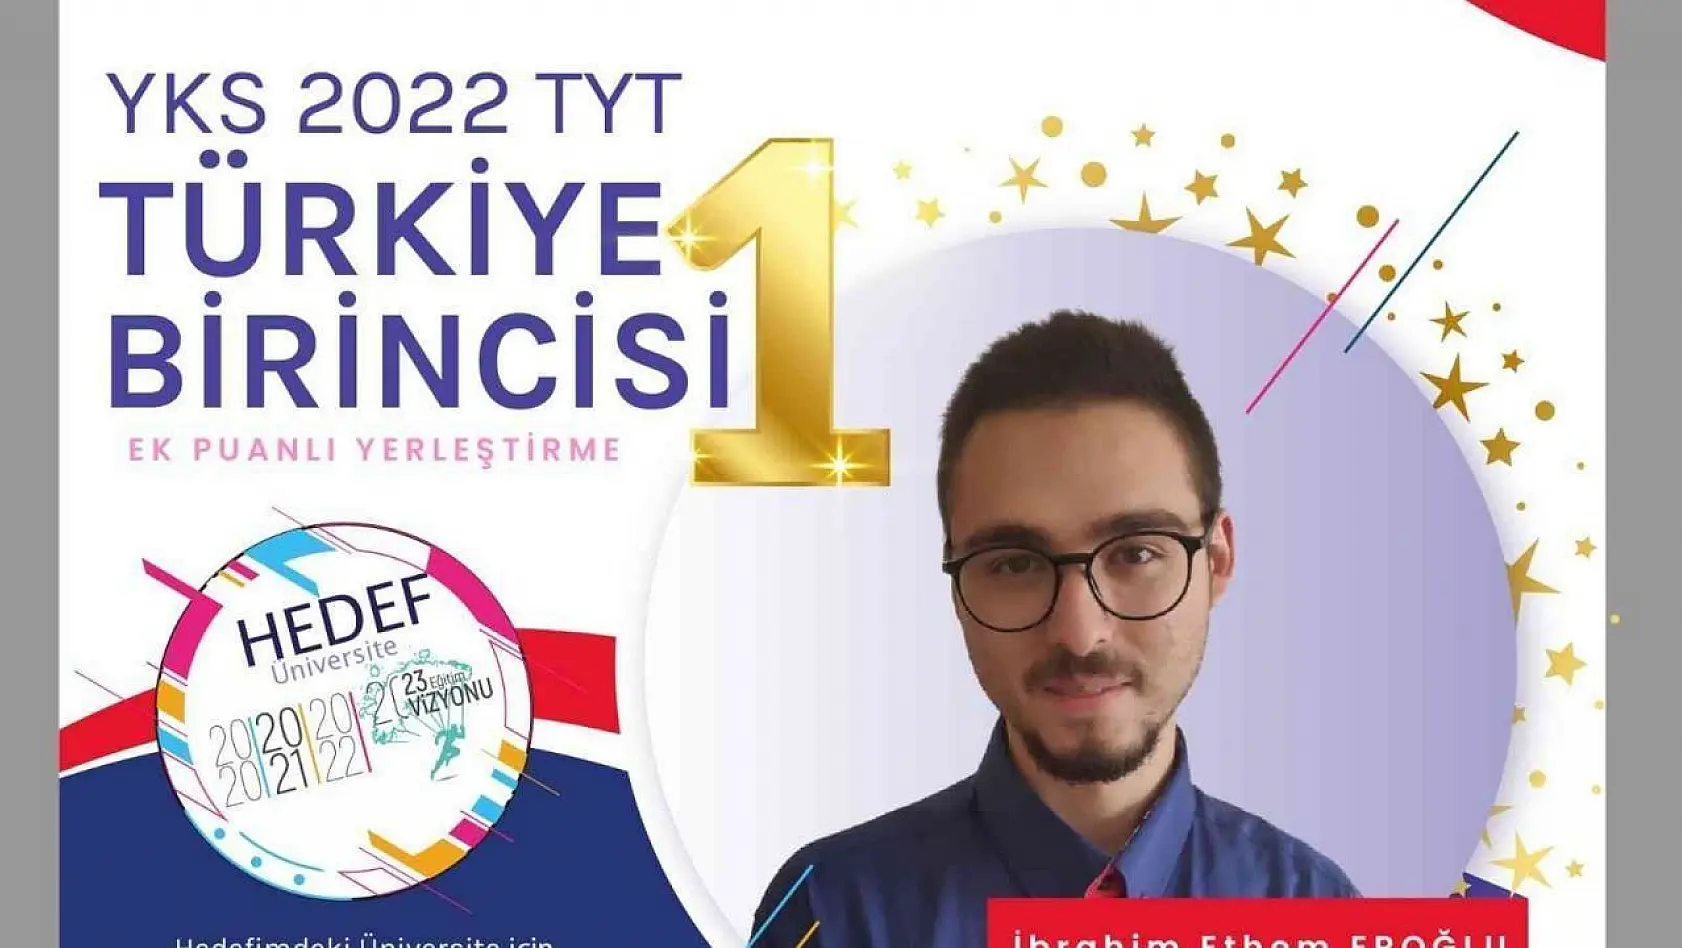 Merkezefendi Anadolu İmam Hatip Lisesi, TYT Türkiye birincisi çıkardı